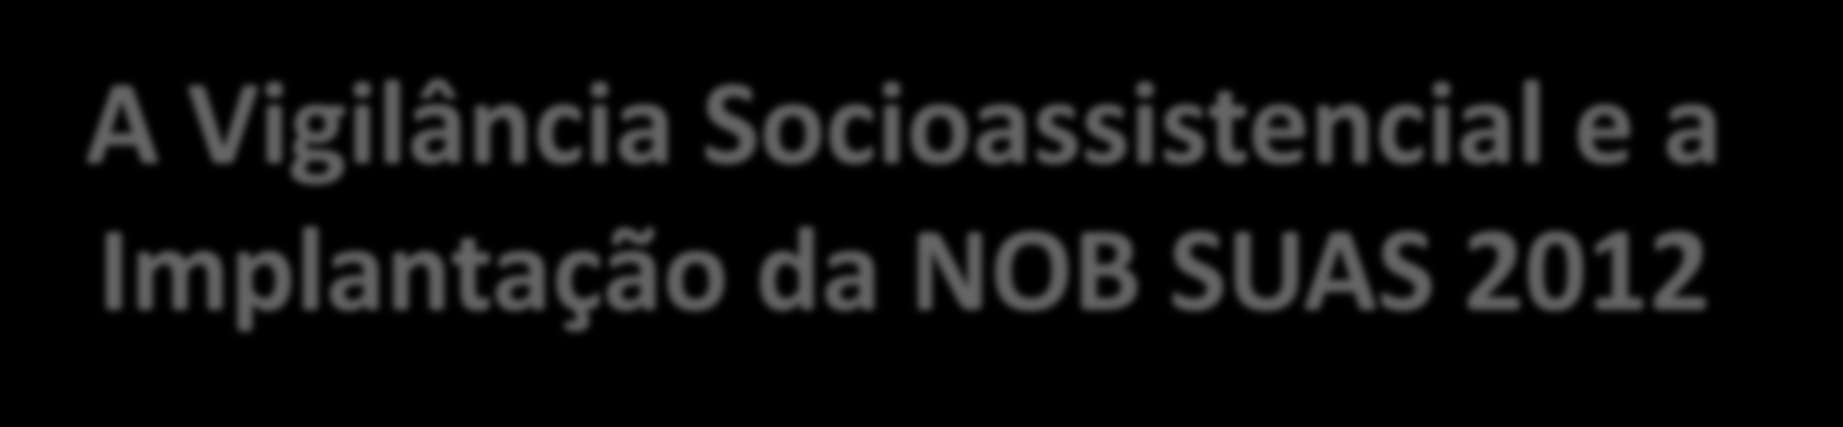 A Vigilância Socioassistencial e a Implantação da NOB SUAS 2012 Luis Otavio Farias Coordenador Geral dos